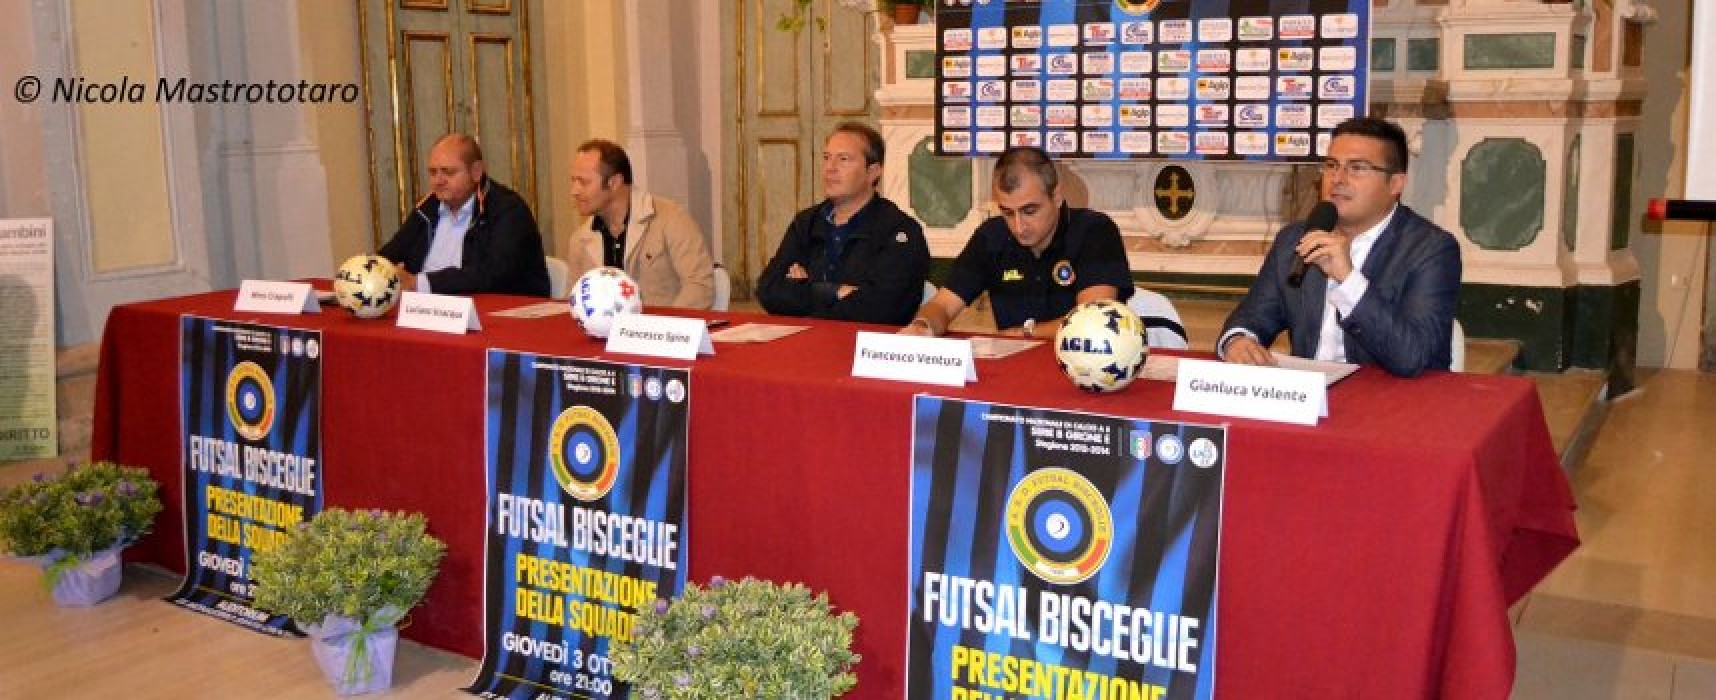 Giovedì 11 settembre il Futsal Bisceglie si presenta ufficialmente